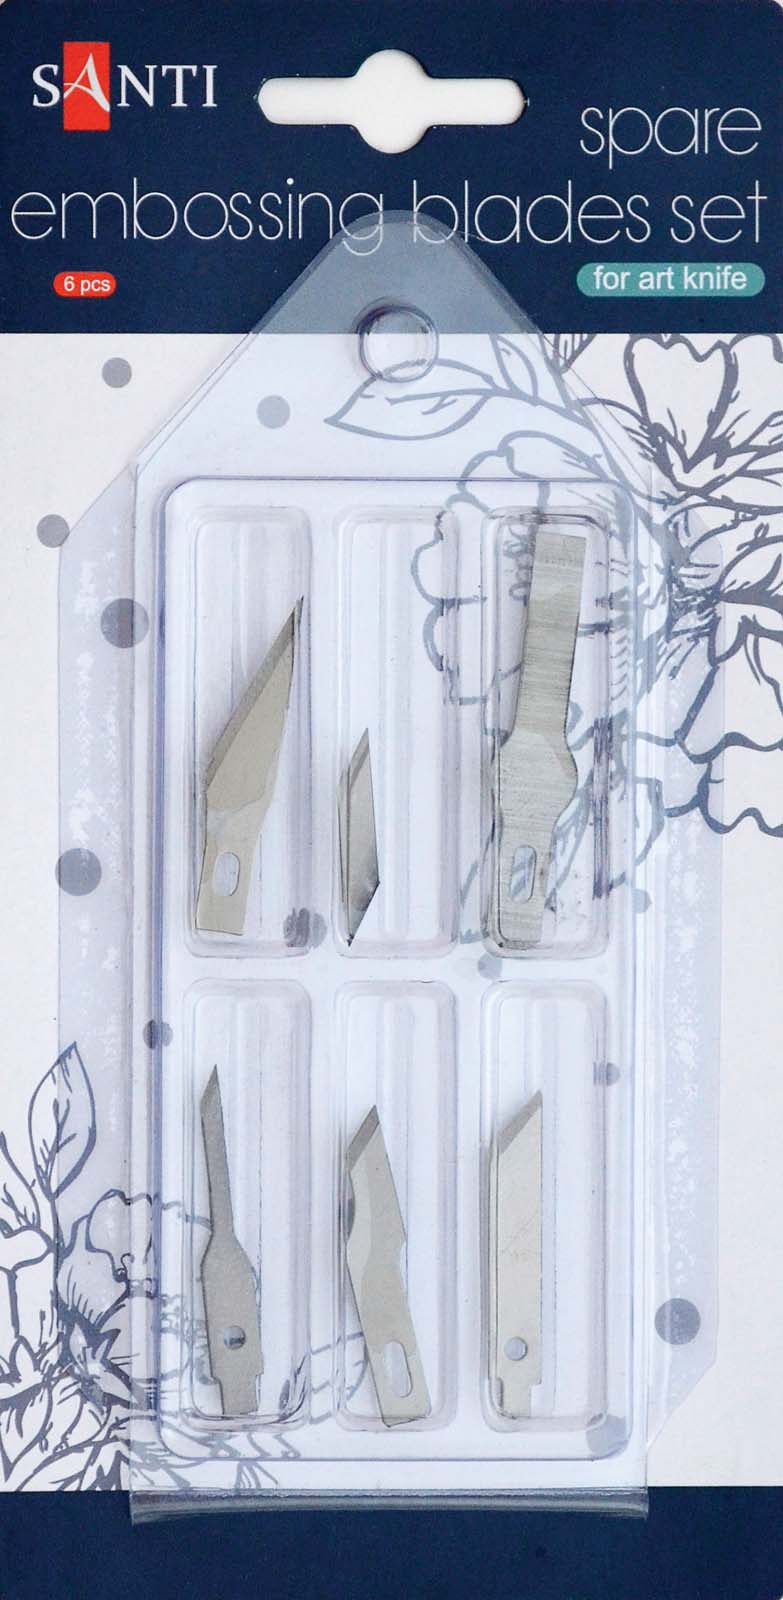 Набор фигурных лезвий для макетного ножа, Santi, 6 шт./уп.